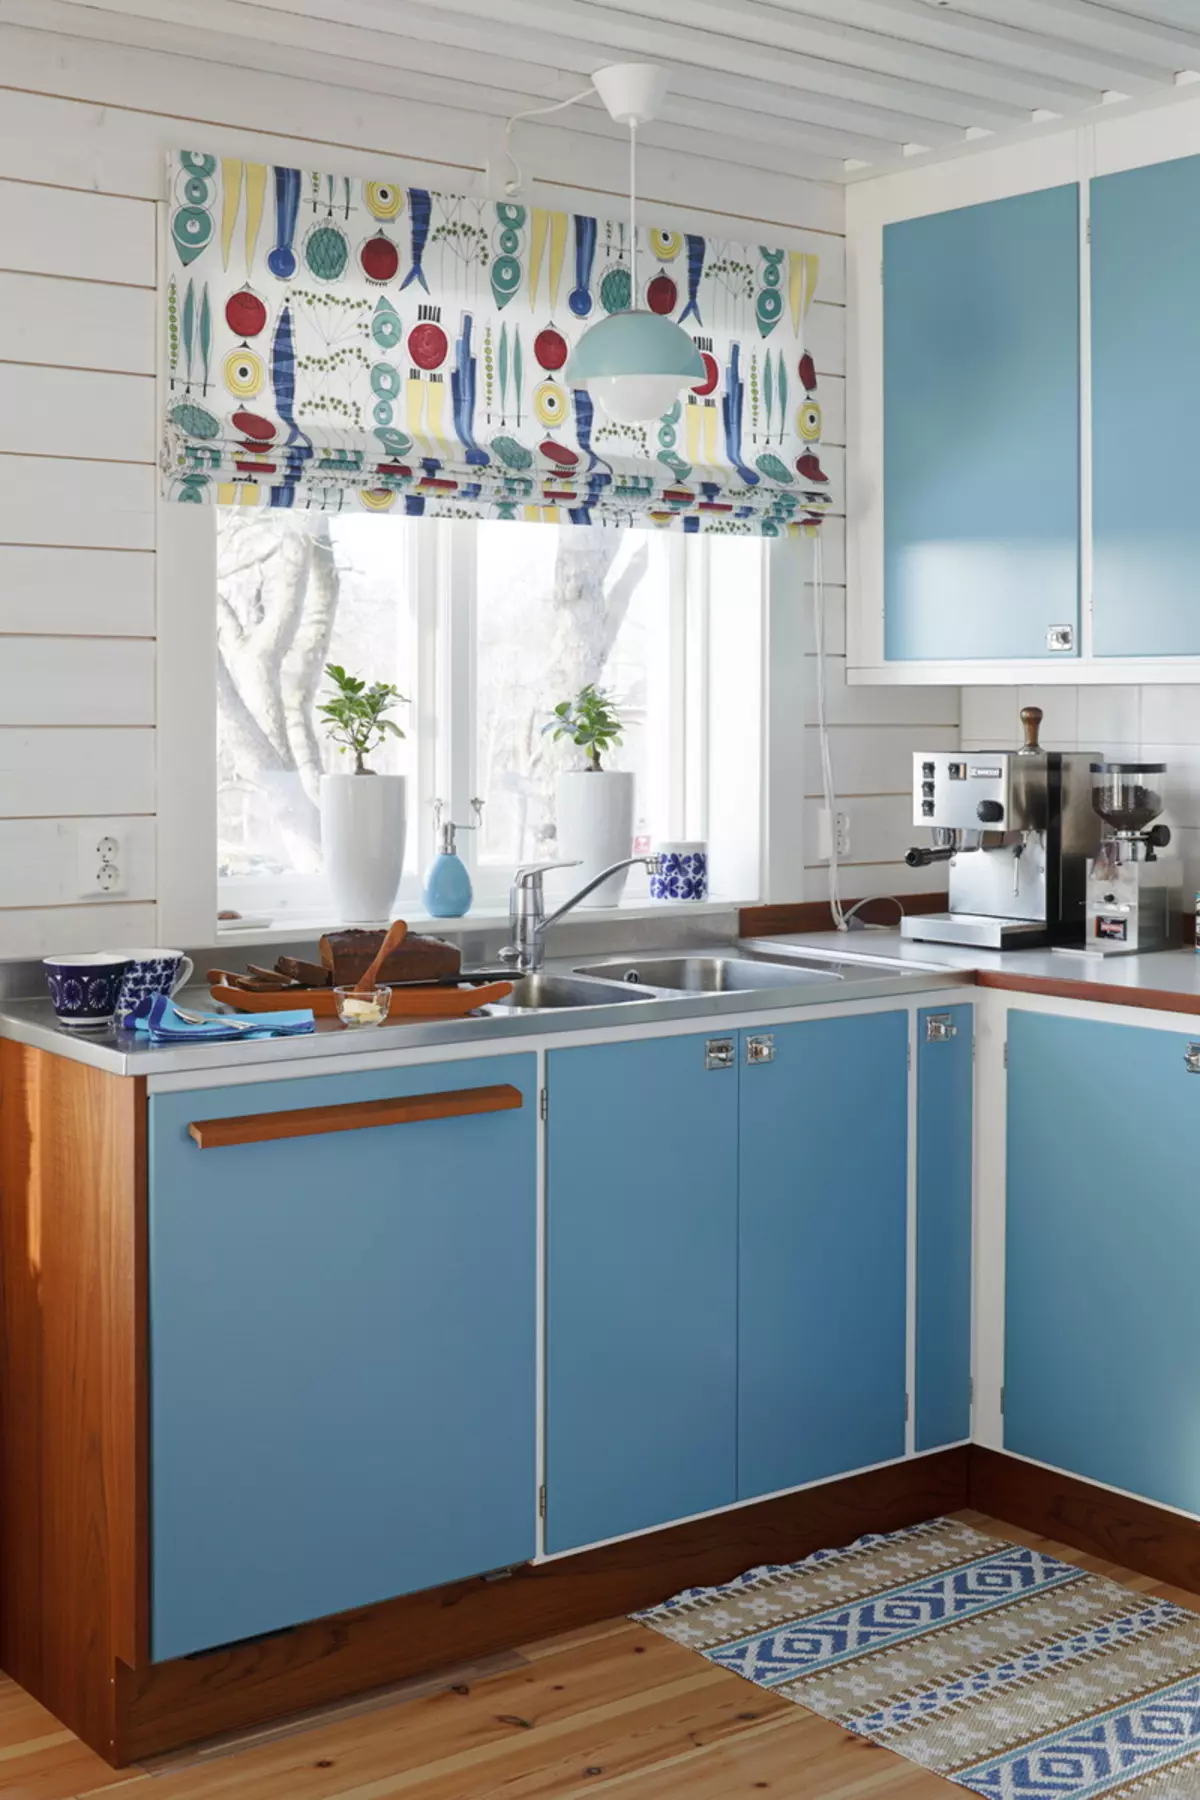 Bucătărie albastră (82 fotografii): Ce culori sunt combinate în interiorul unui set de bucătărie albastră? Design de bucătărie în tonuri albastre ușoare și întunecate 9555_5